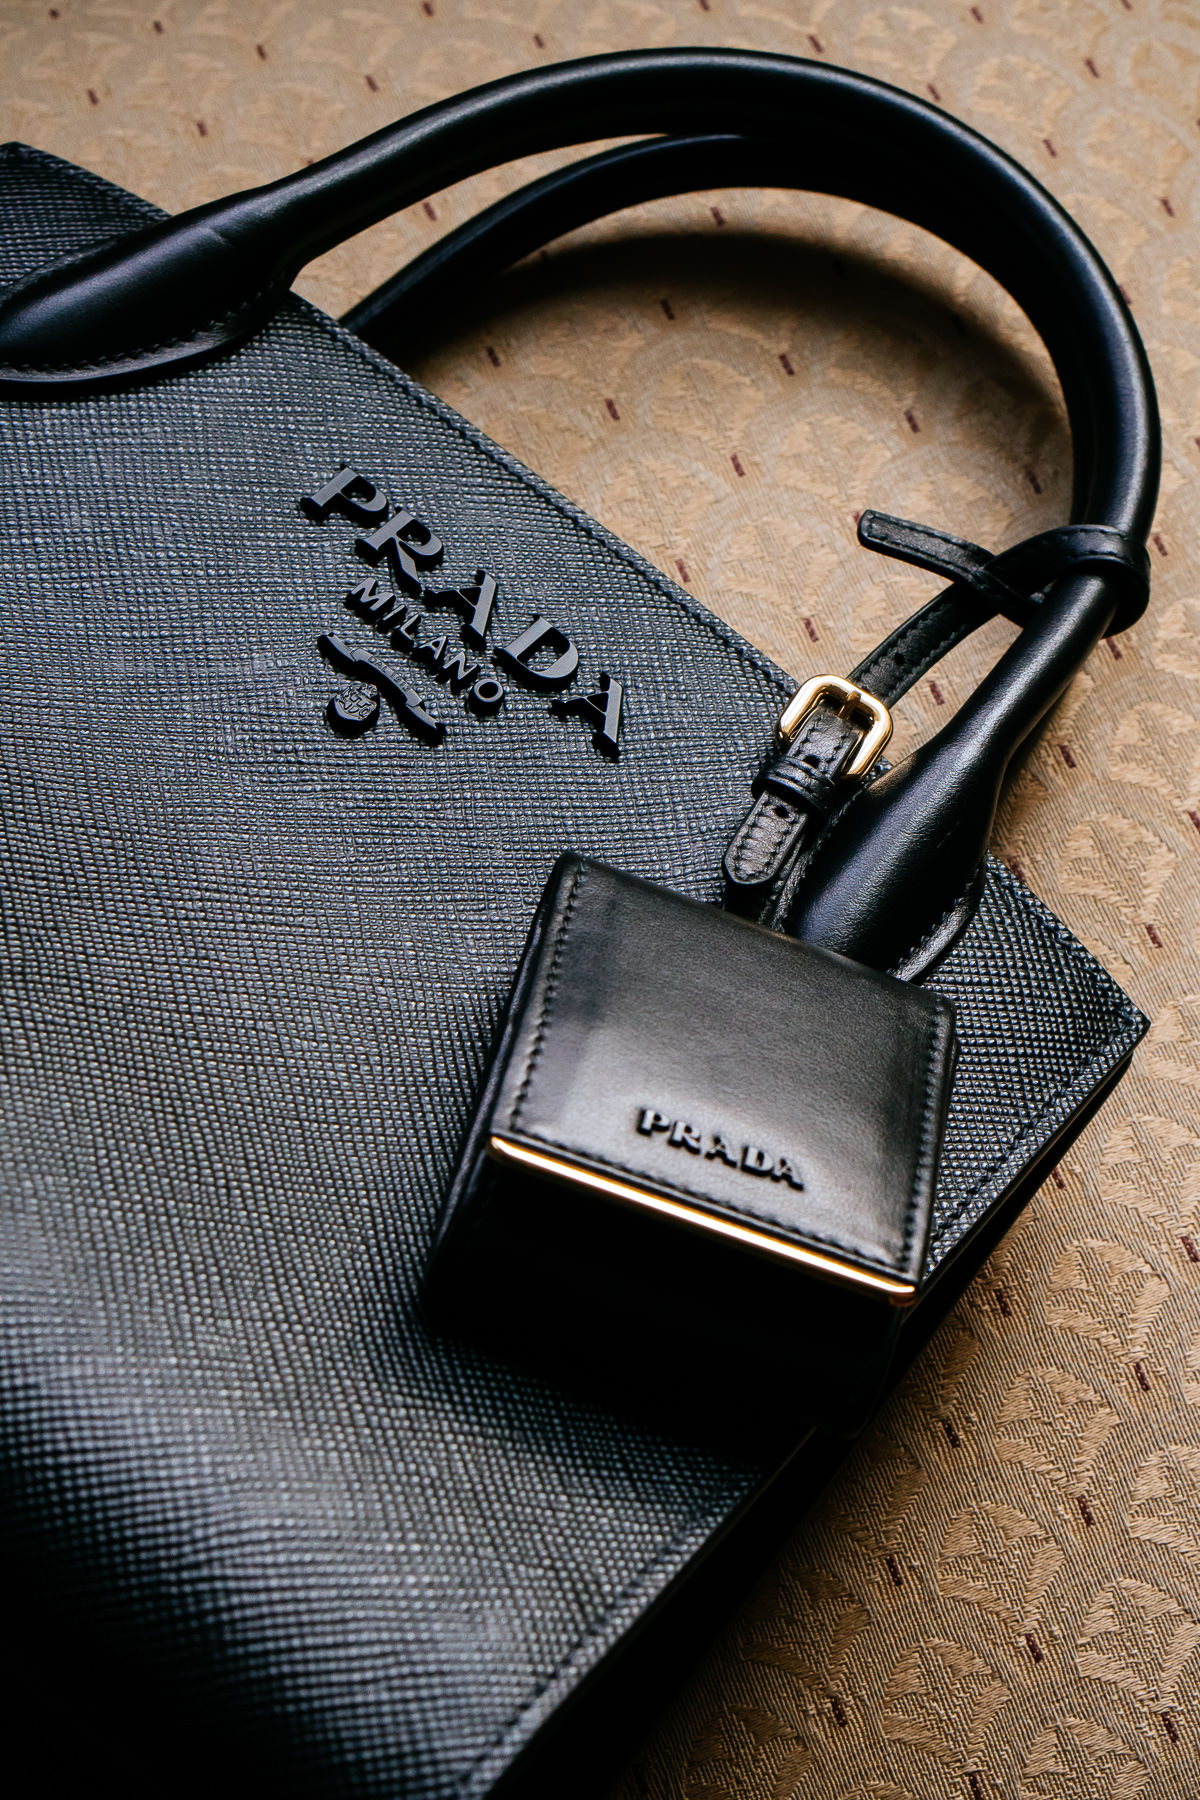 prada monochrome saffiano leather bag review